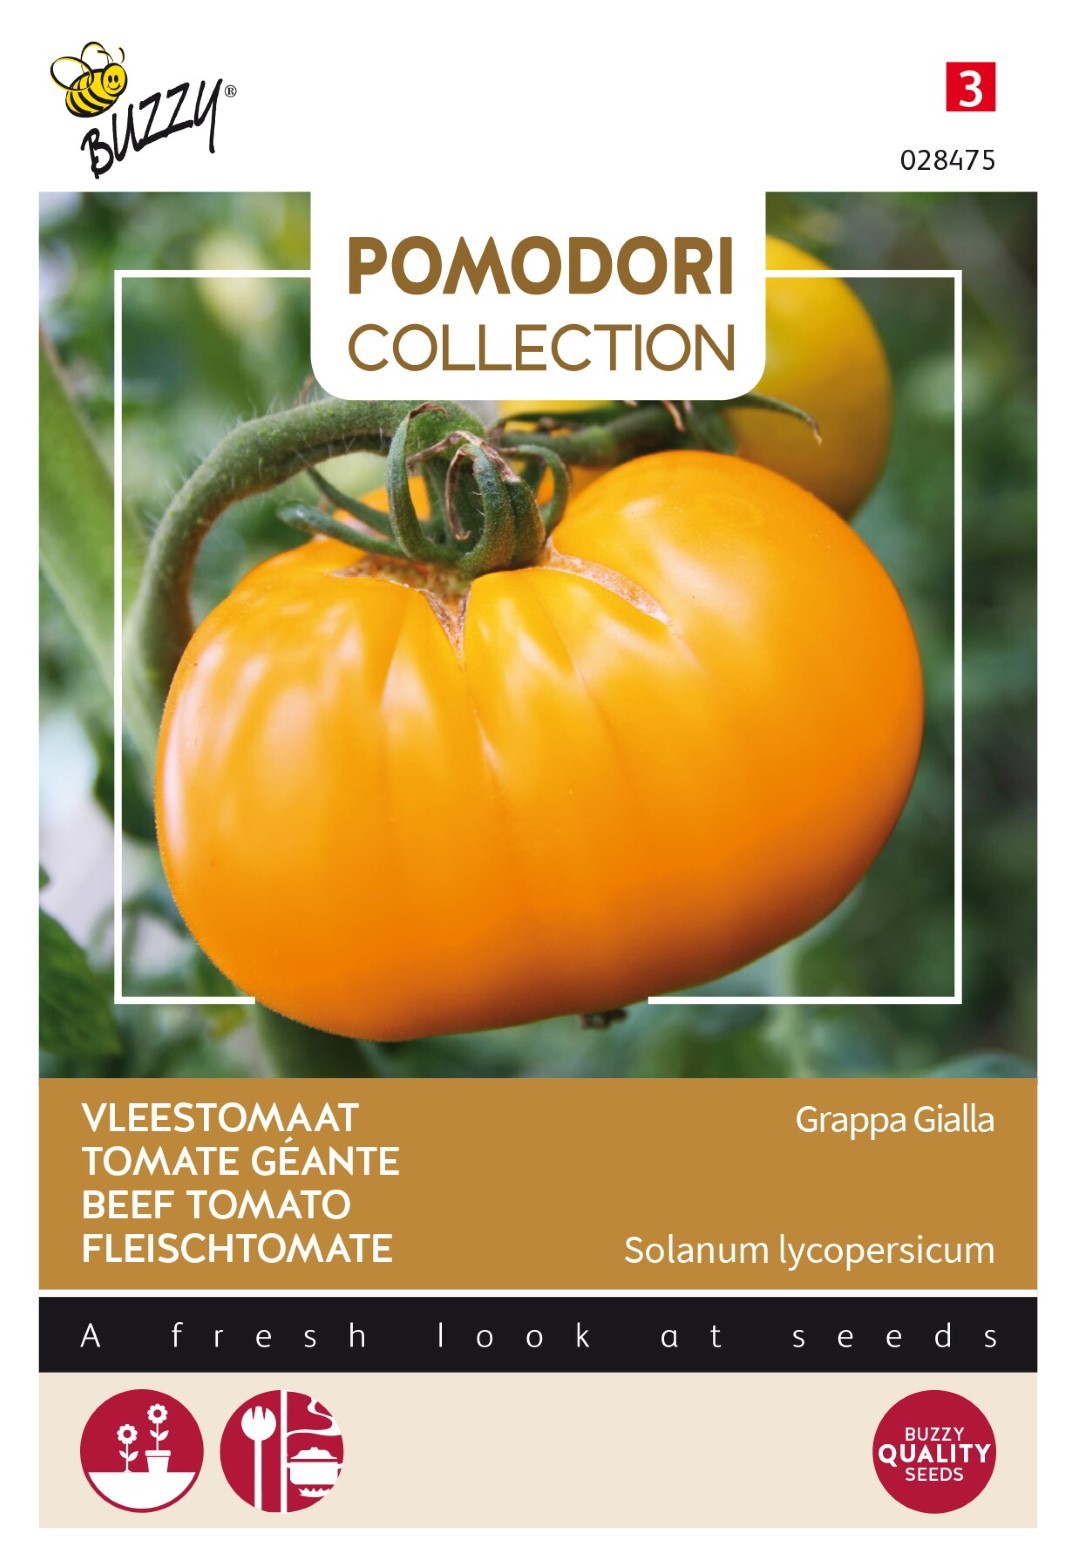 Pomodori grappa gialla